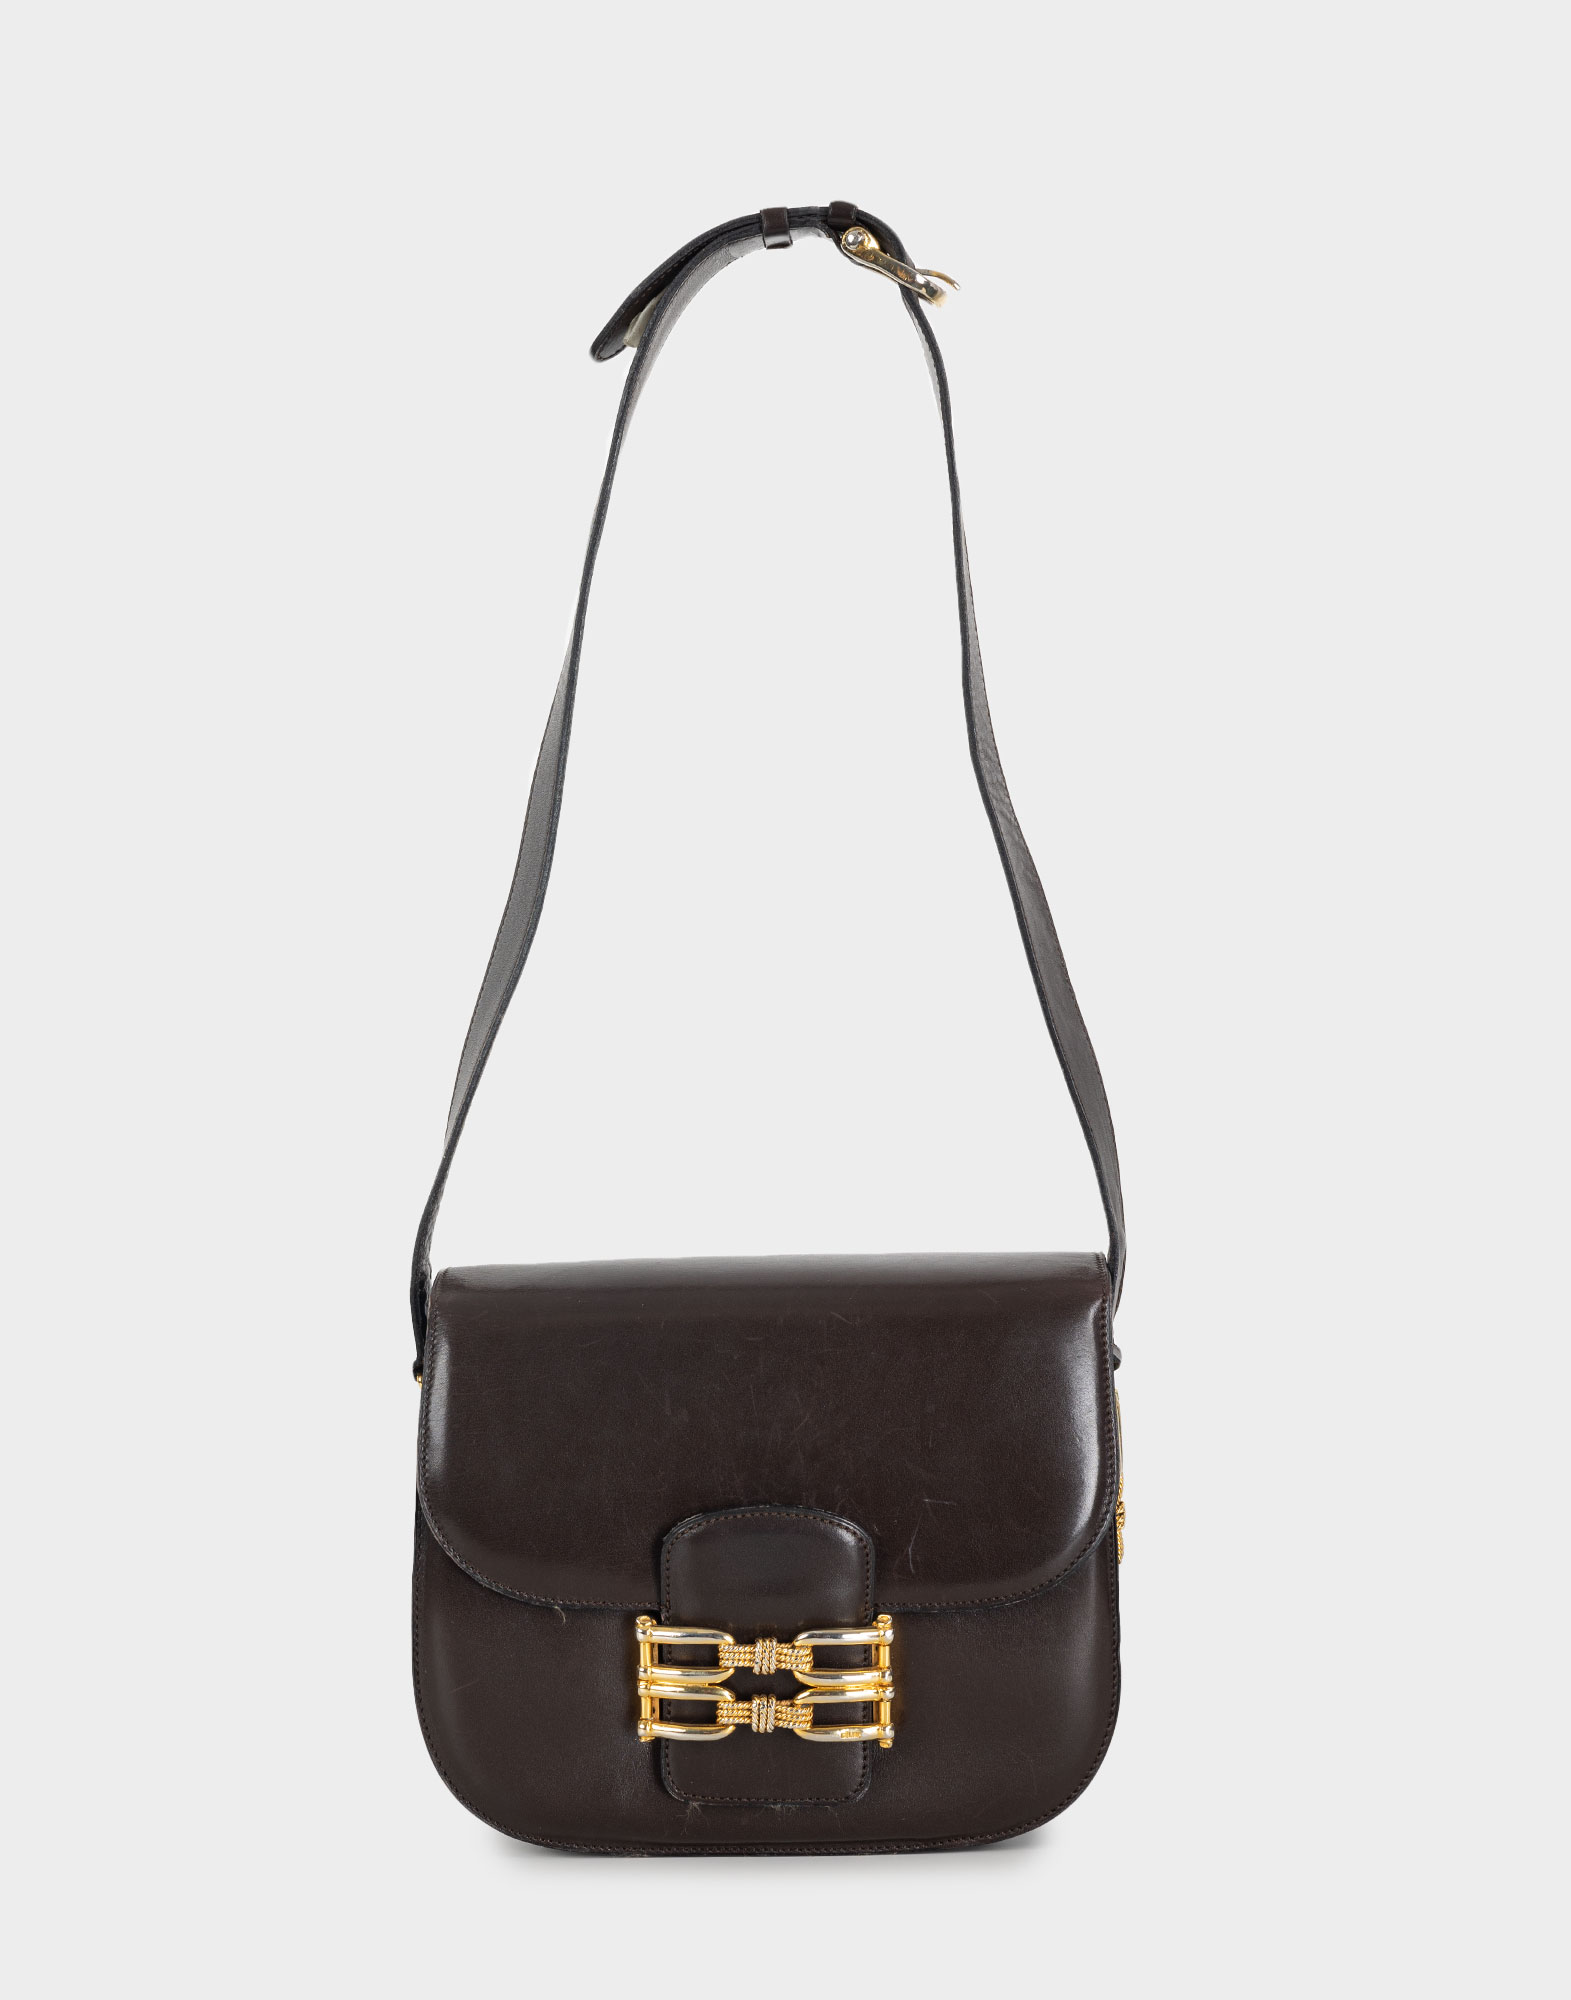 borsa marrone da donna in pelle con tracolla regolabile, chiusura anteriore con patta e dettaglio oro